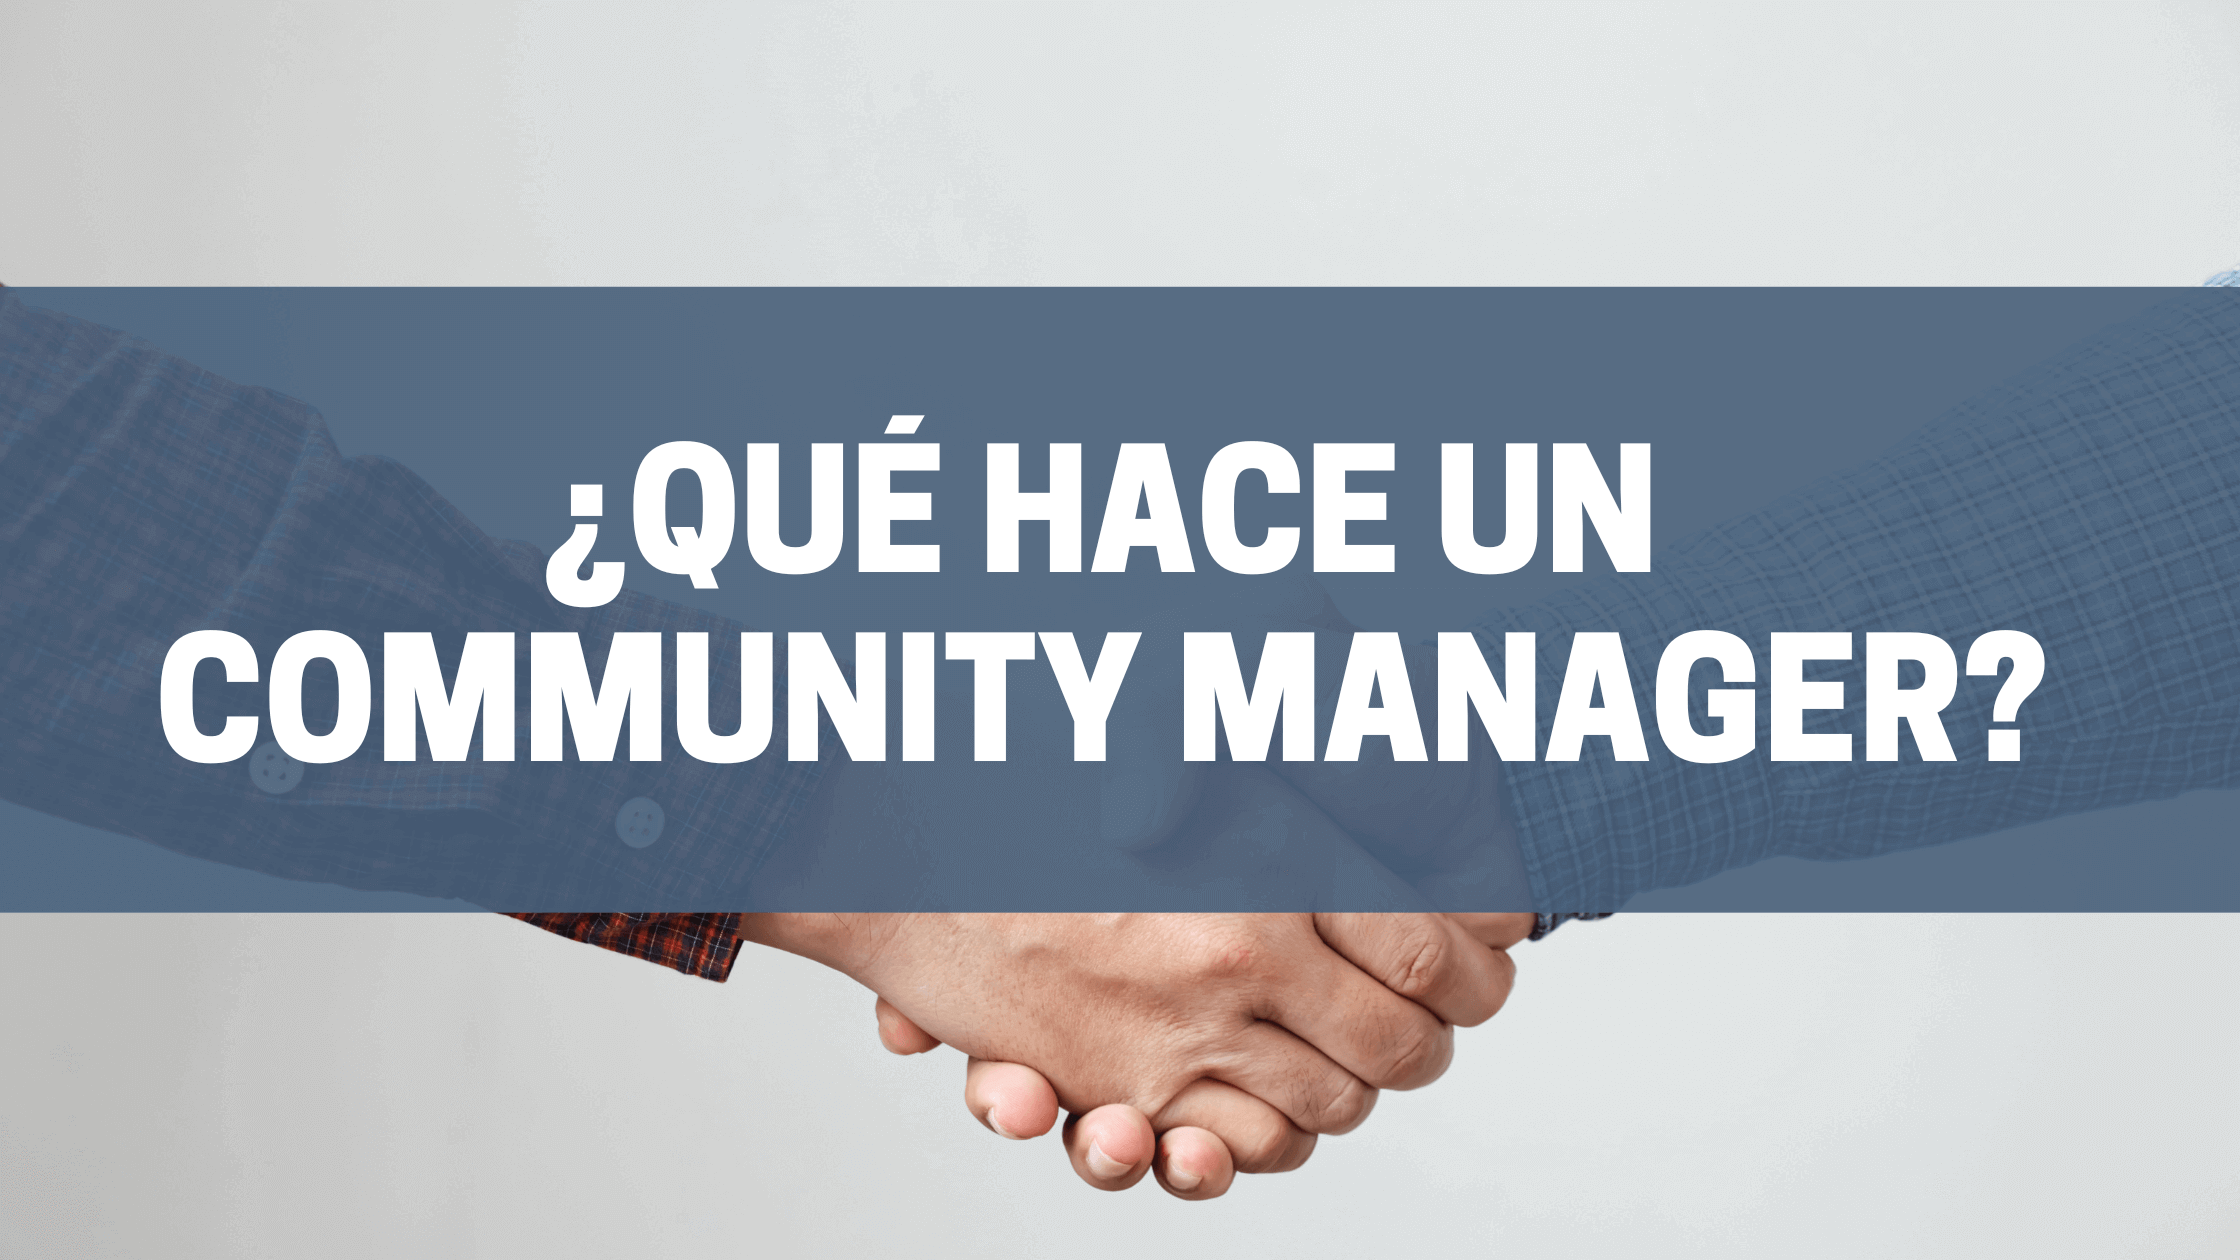 ¿Qué hace un community manager?